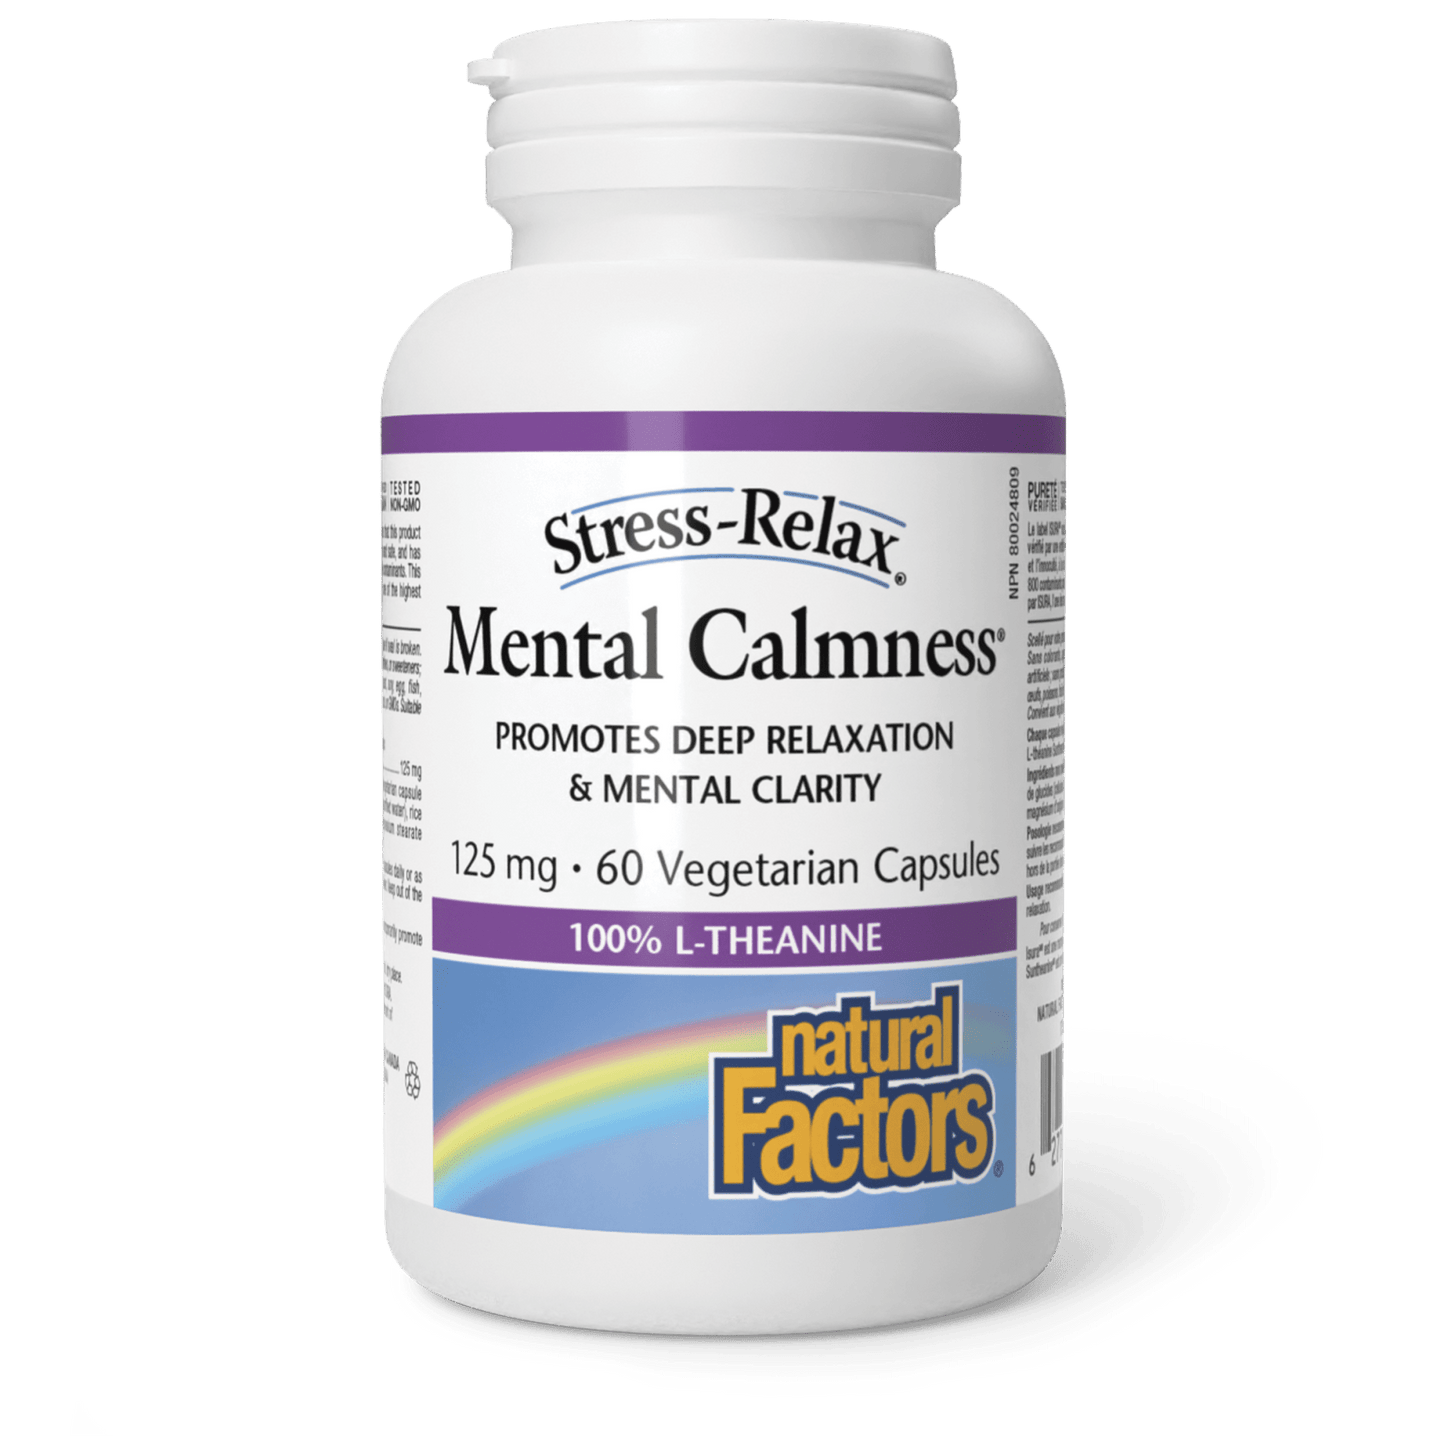 Mental Calmness 125 mg, Stress-Relax, Natural Factors|v|image|4830